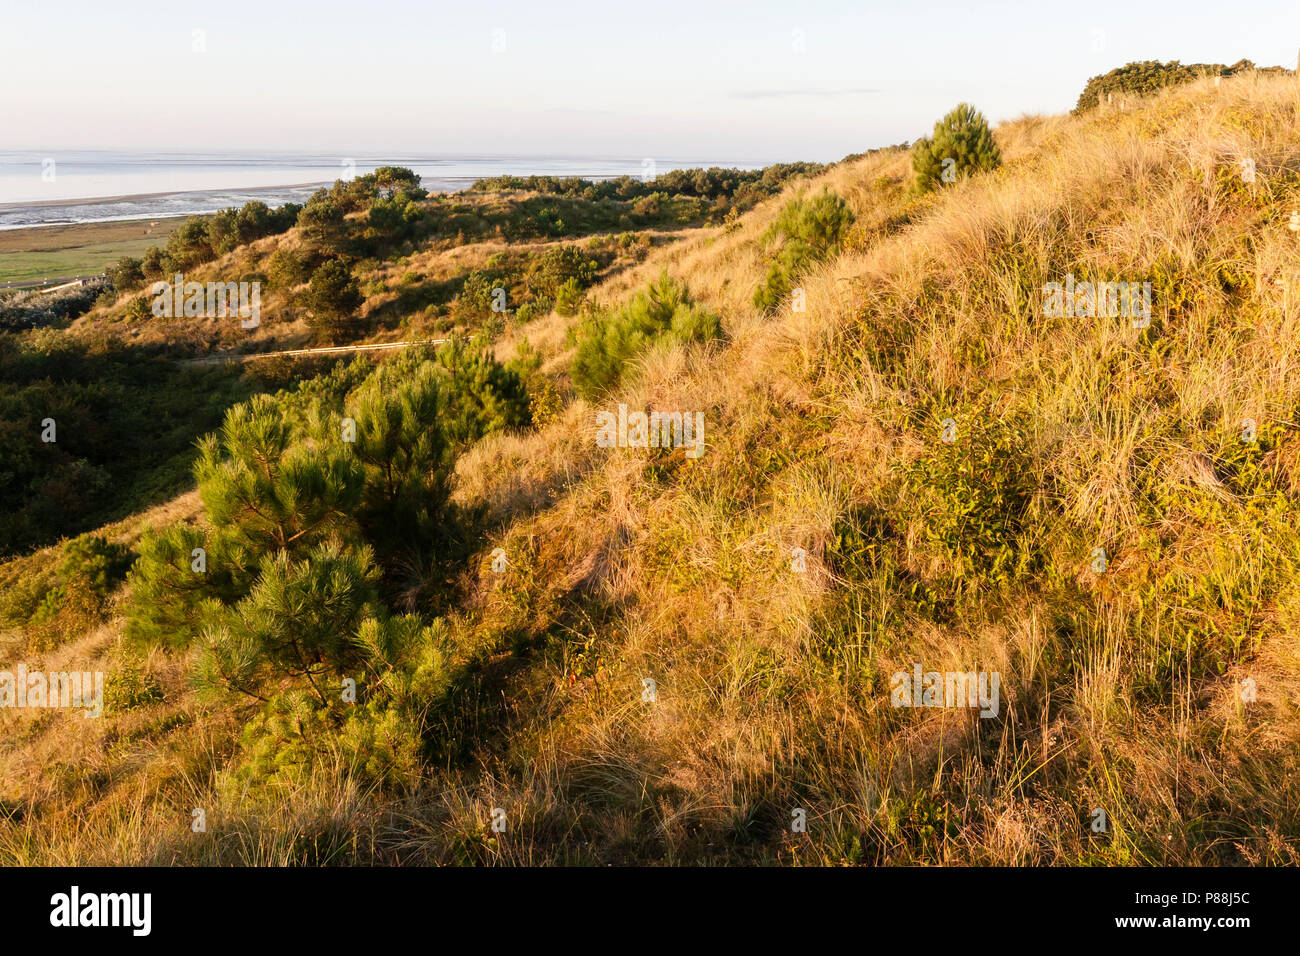 Uitzicht over duinen met naaldbomen, Overview of dunes with conifers Stock Photo